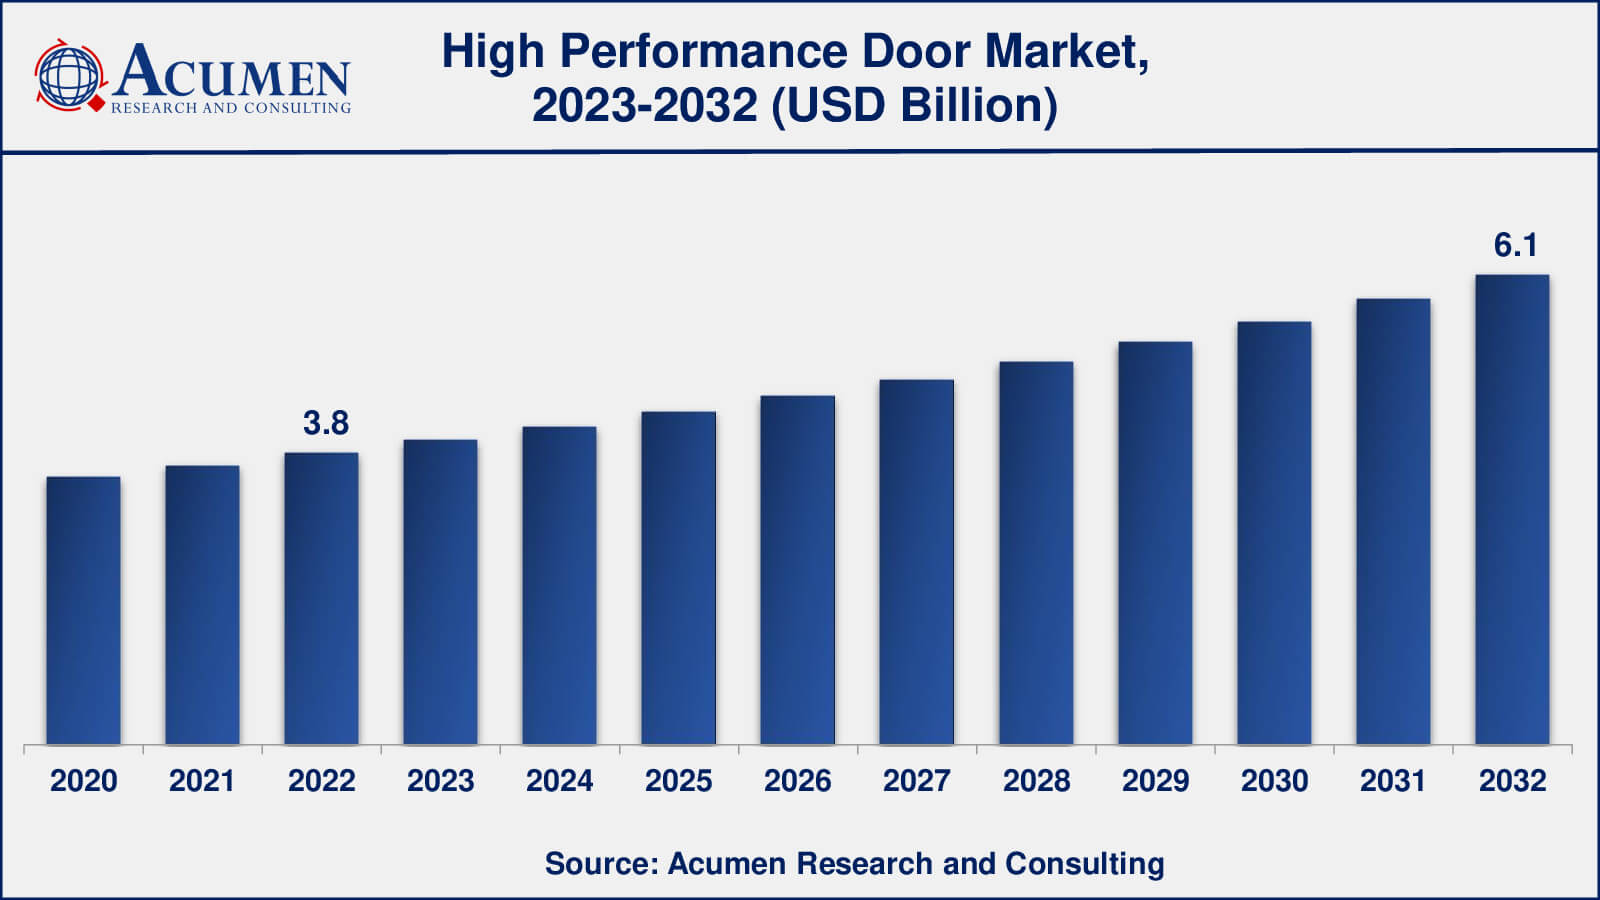 High Performance Door Market Drivers